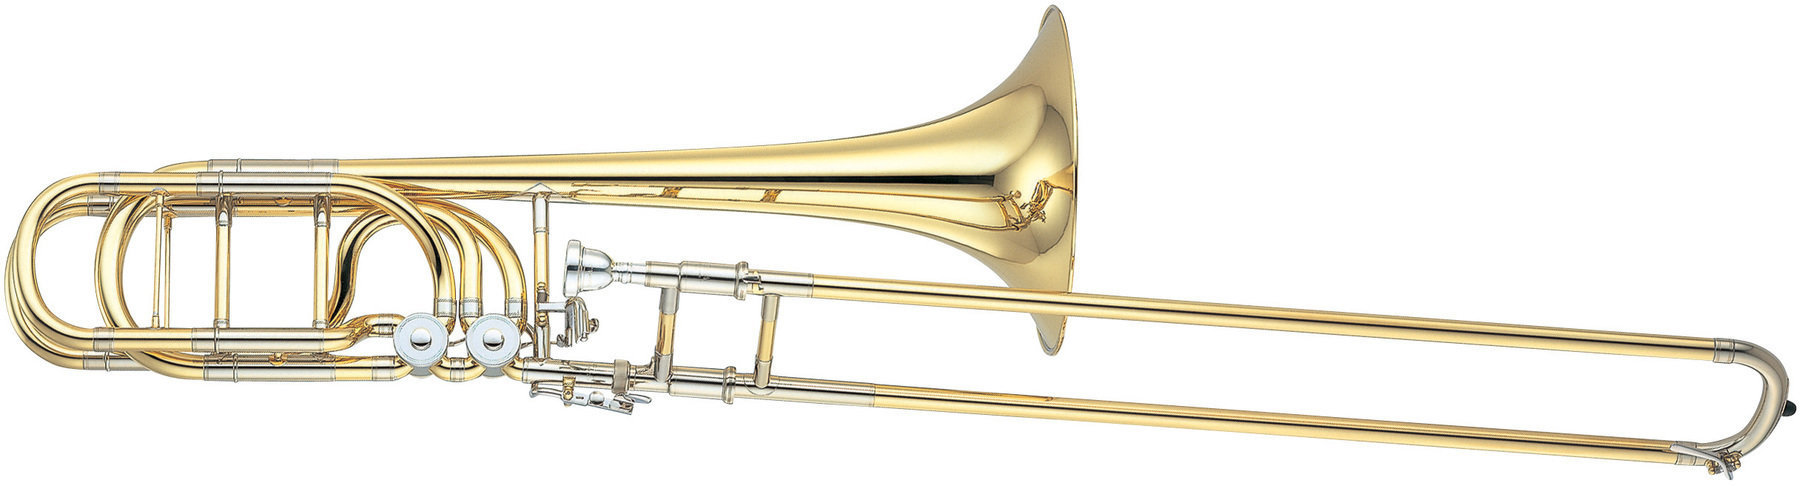 Bas trombon Yamaha YBL 830 G Bas trombon